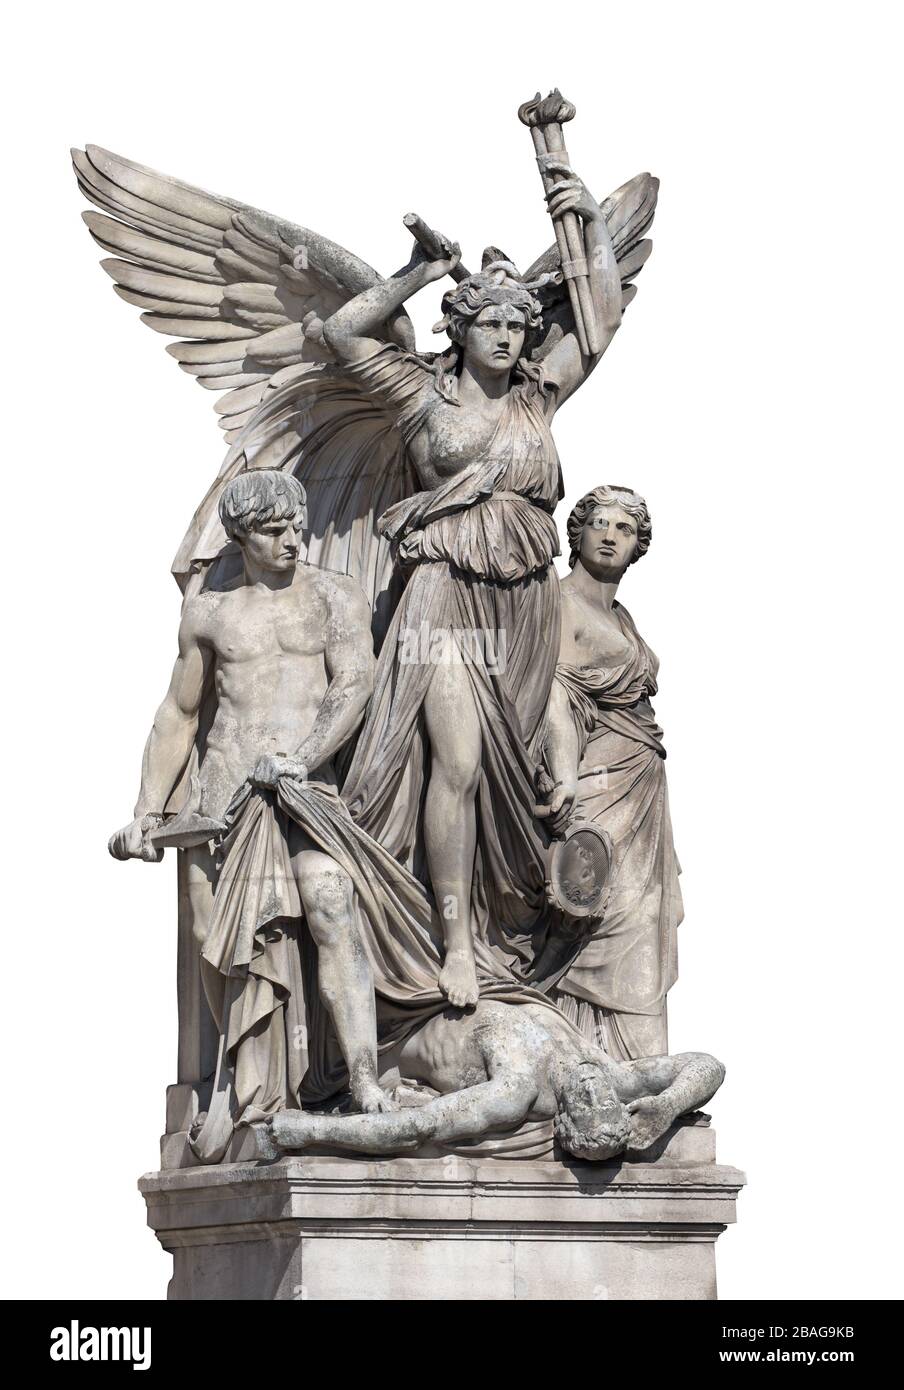 Groupe sculptural "drame lyrique" de Jean-Joseph Perraud sur la façade du Palais Garnier à Paris, France. Isolé sur blanc Banque D'Images